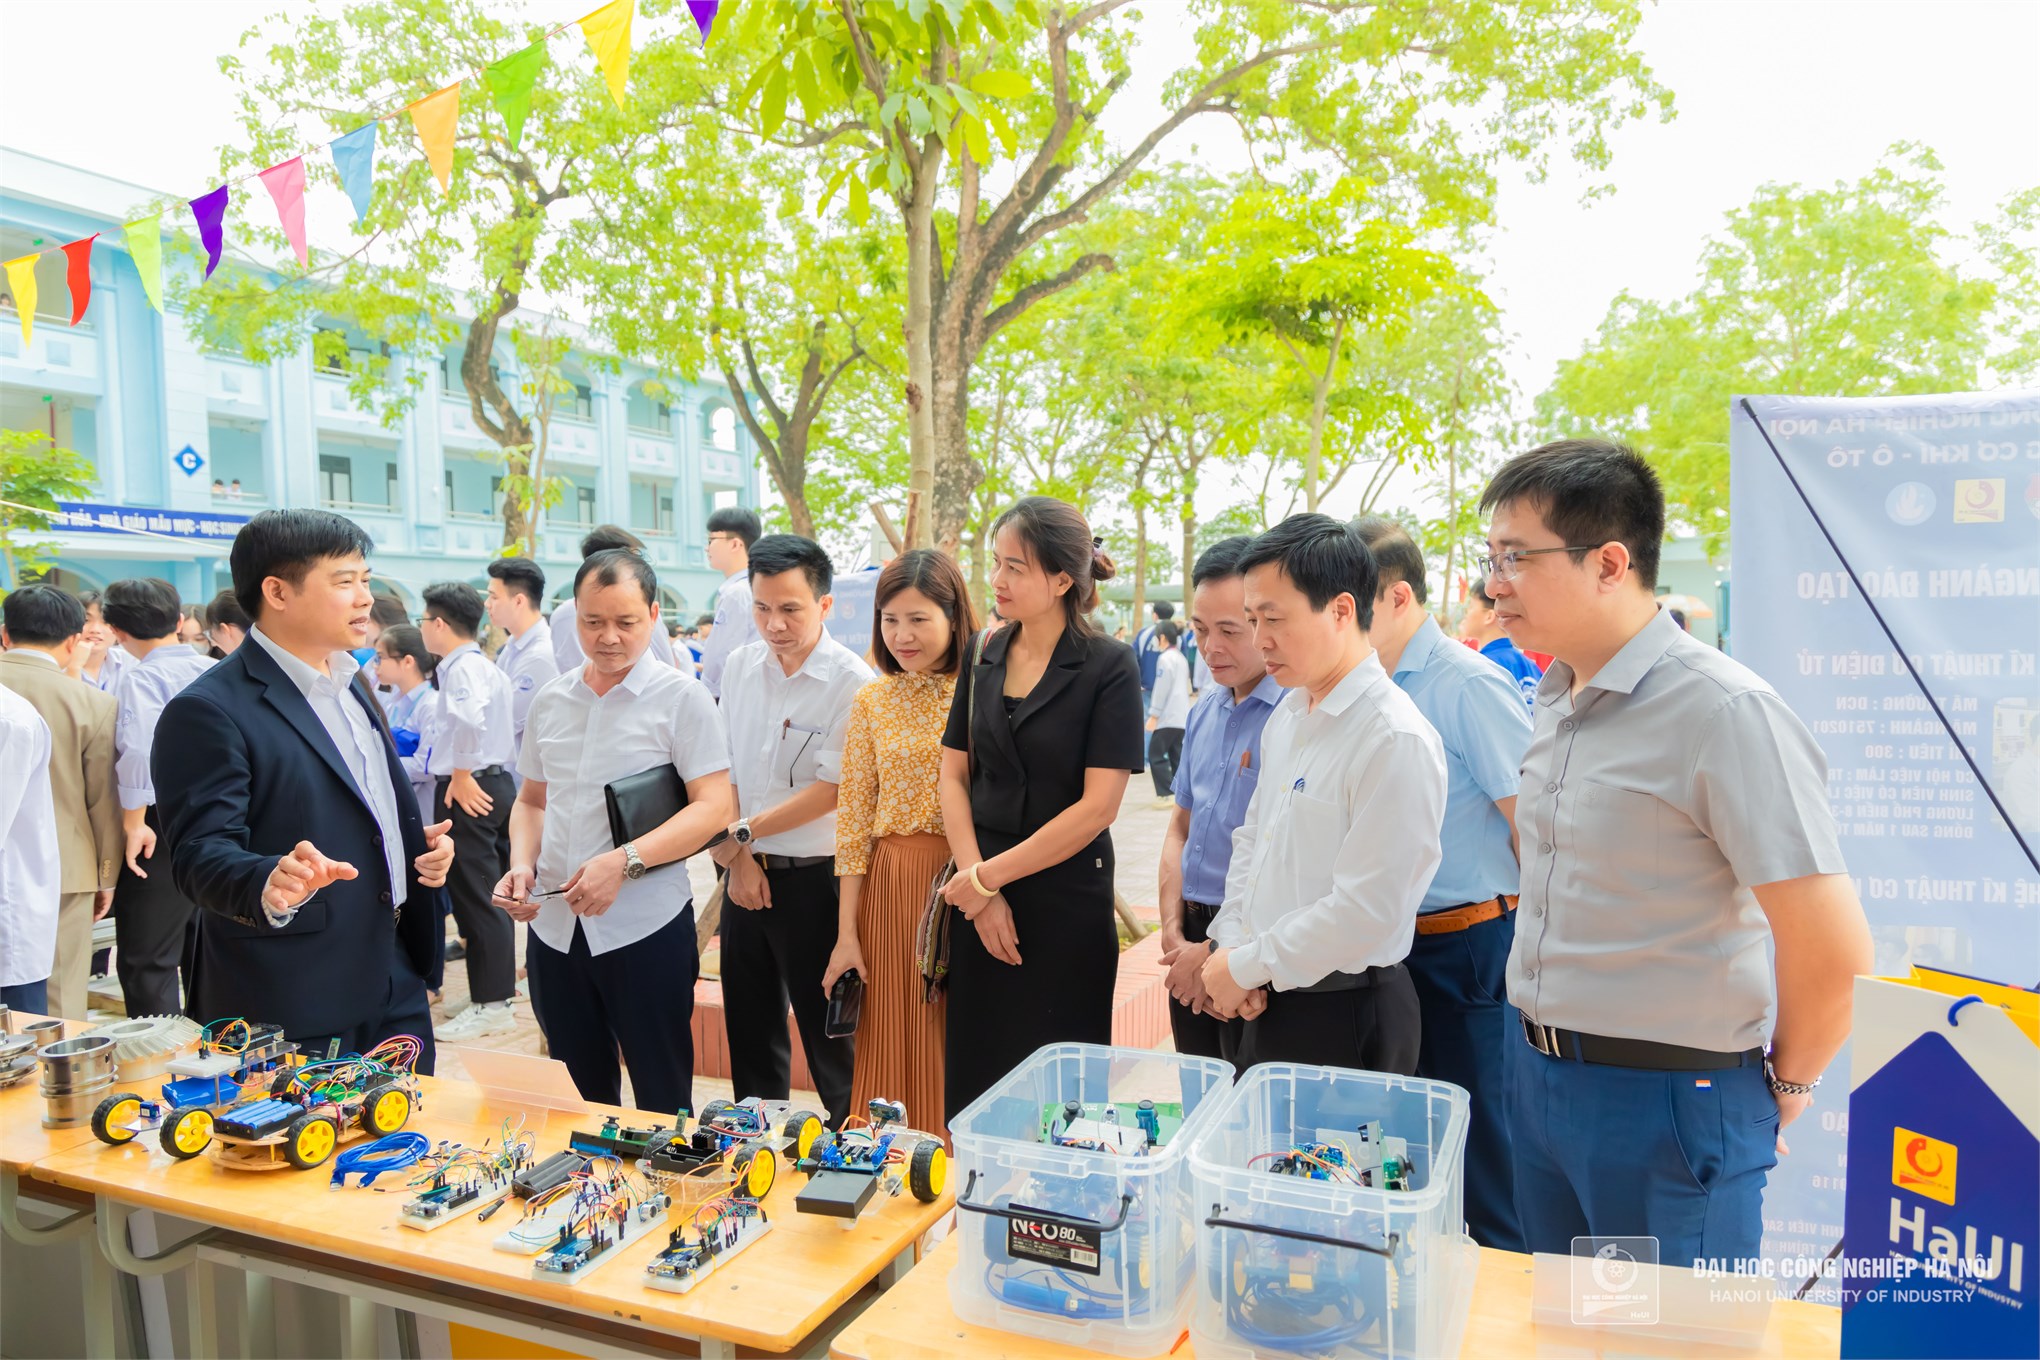 Trường Cơ khí – Ô tô, Đại học Công nghiệp Hà Nội góp phần nâng cao chất lượng giáo dục STEM